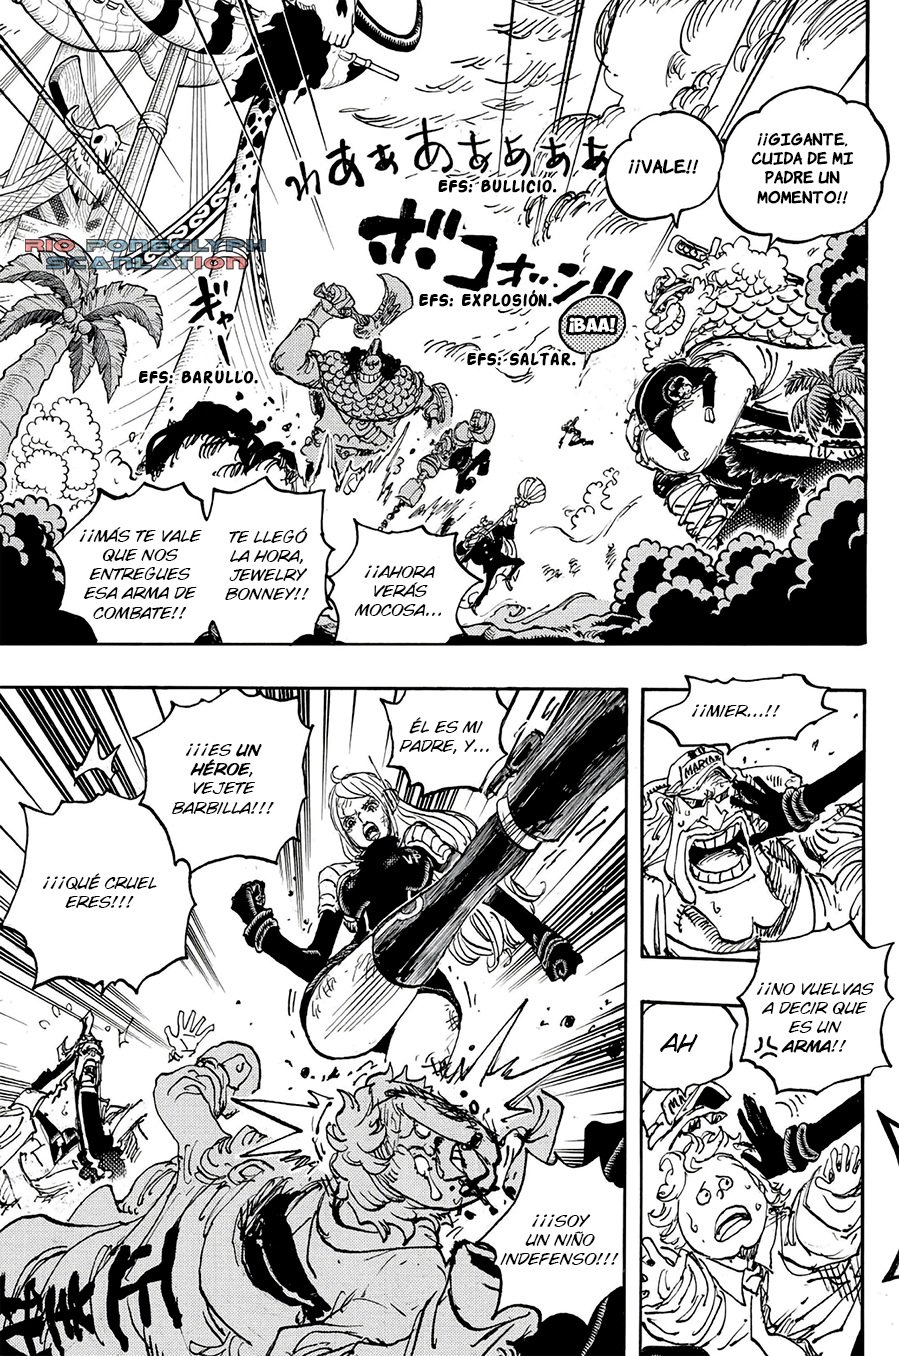 español - One Piece Manga 1112 [Español] [Rio Poneglyph Scans] 04-2